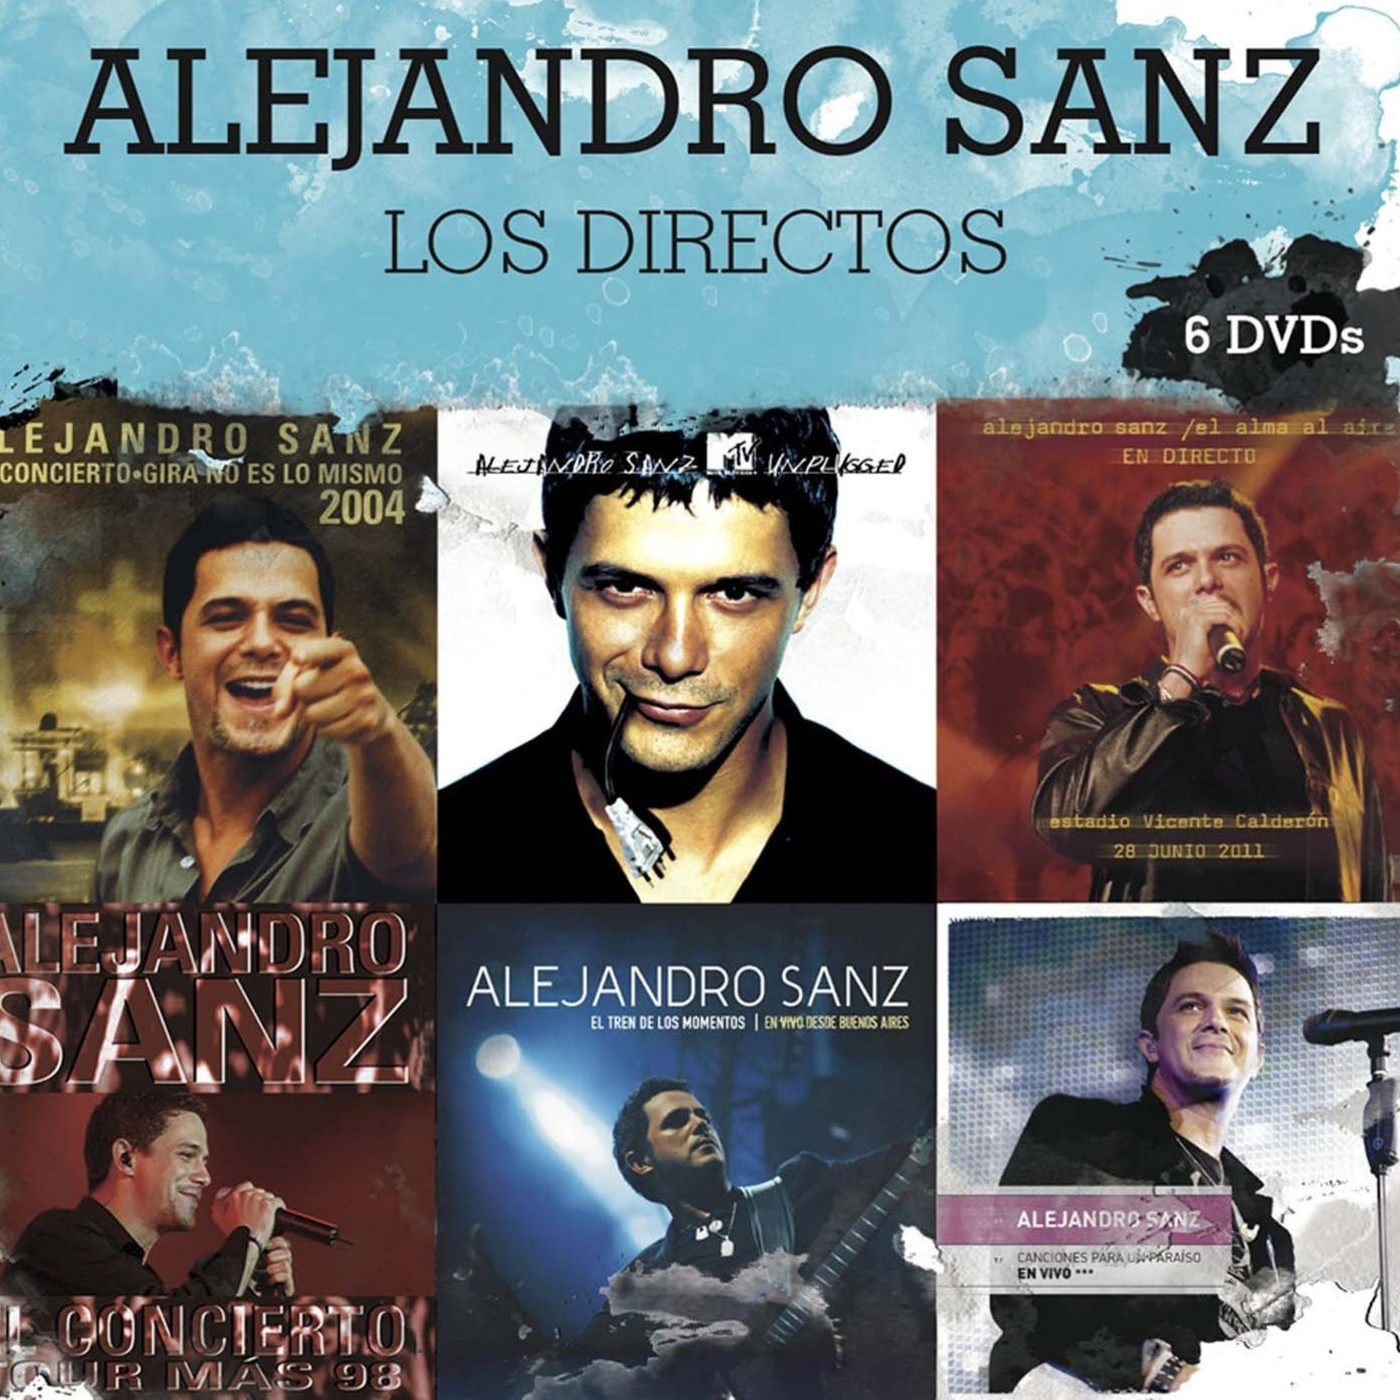 Alejandro Sanz Discografia De Exitos En La Voz Natural En Mp30102 A